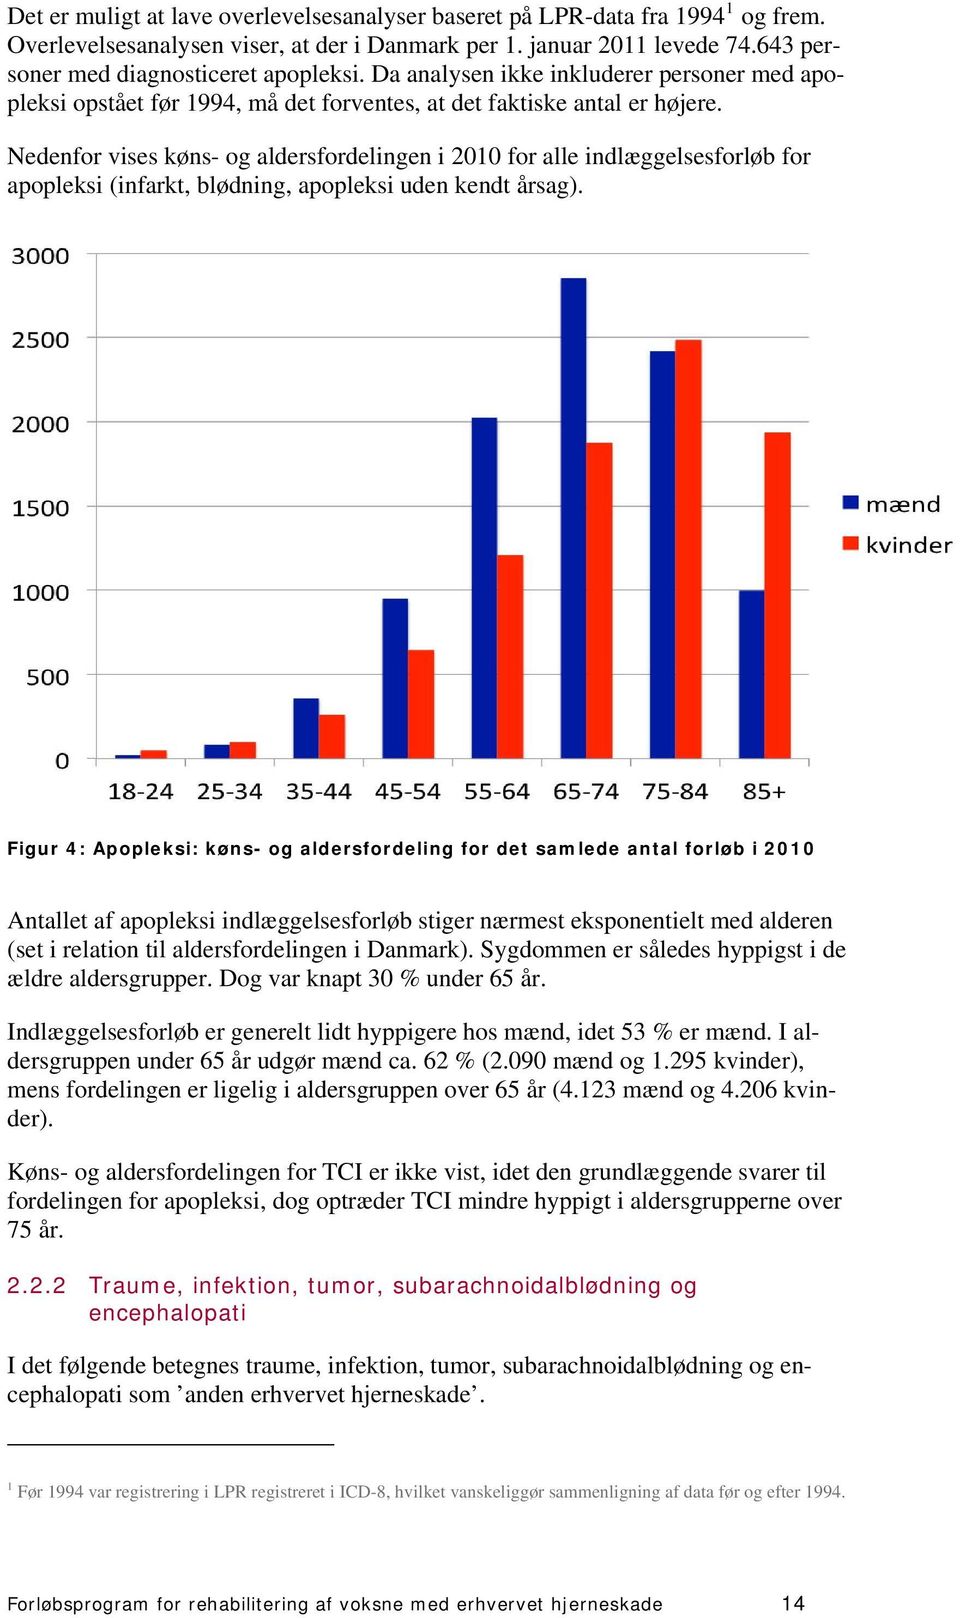 Nedenfor vises køns- og aldersfordelingen i 2010 for alle indlæggelsesforløb for apopleksi (infarkt, blødning, apopleksi uden kendt årsag).